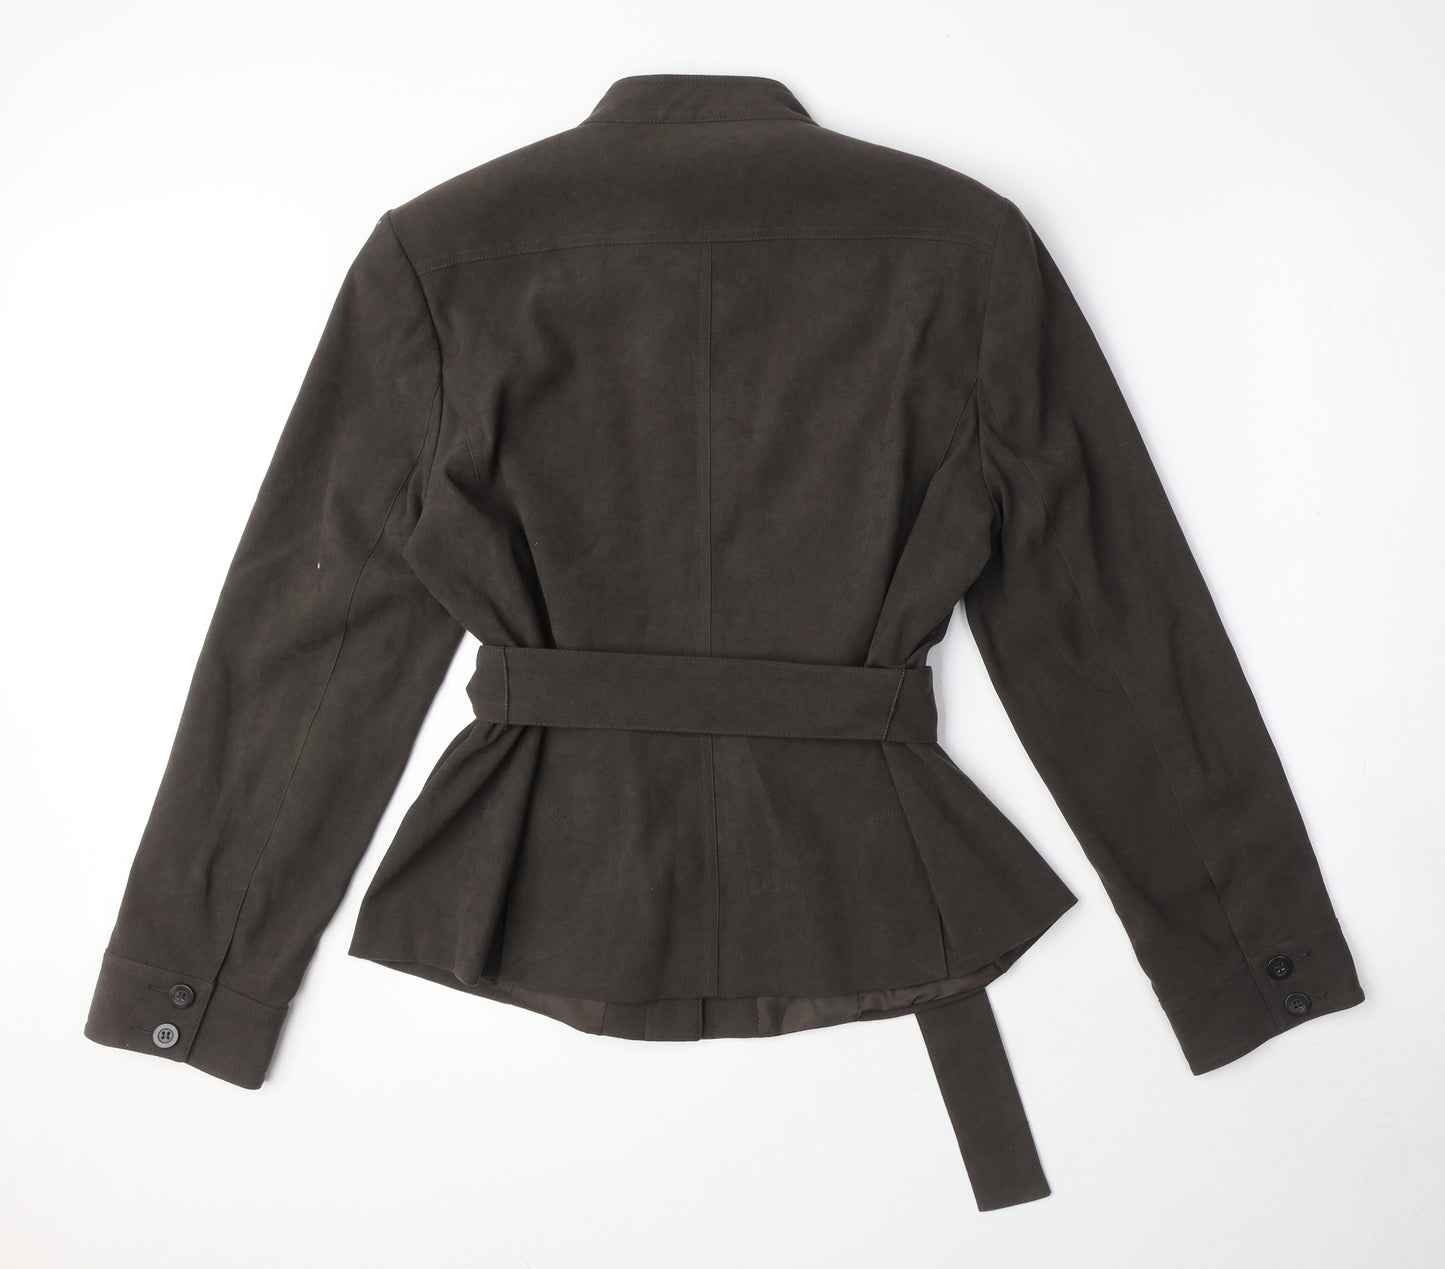 Yen Womens Brown Jacket Size 16 Button